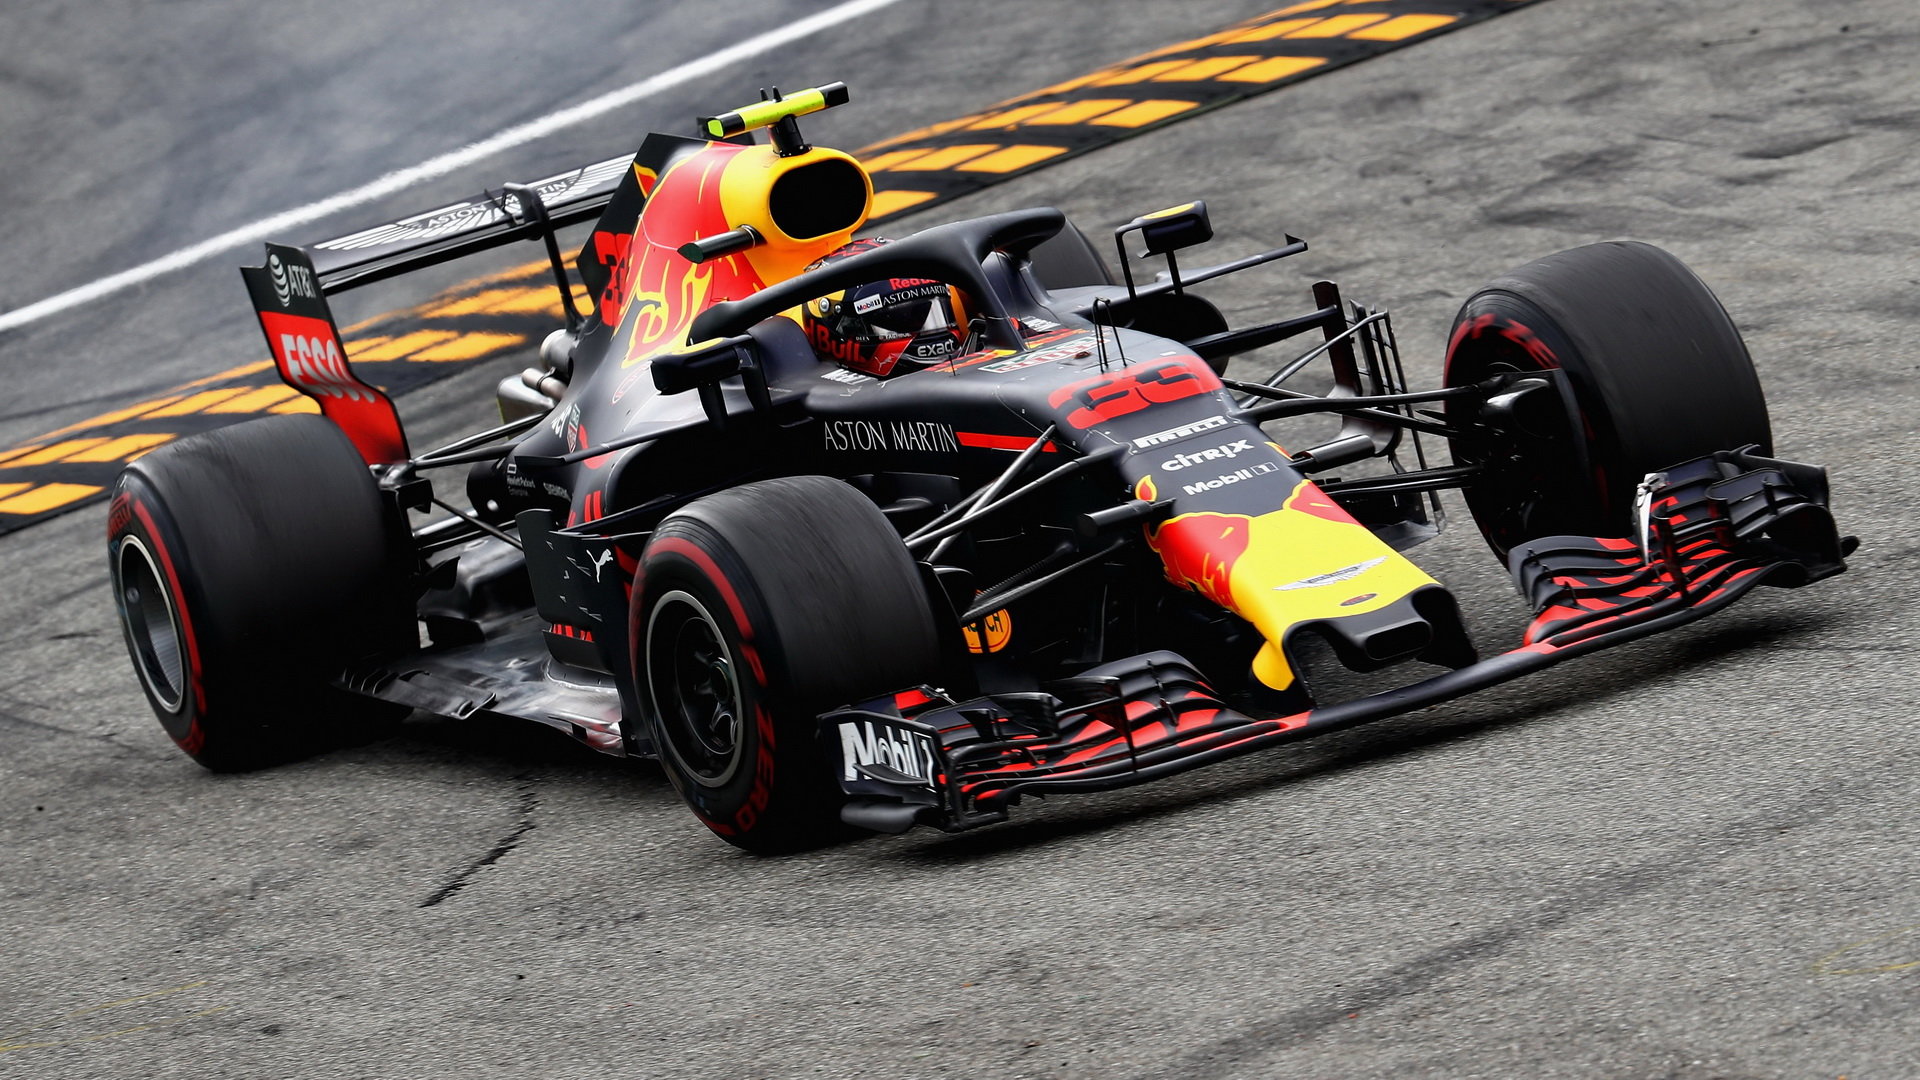 Max Verstappen s novým motorem Renault cílem v Monze projel jako třetí, po penalizaci byl ale klasifikován až jako pátý